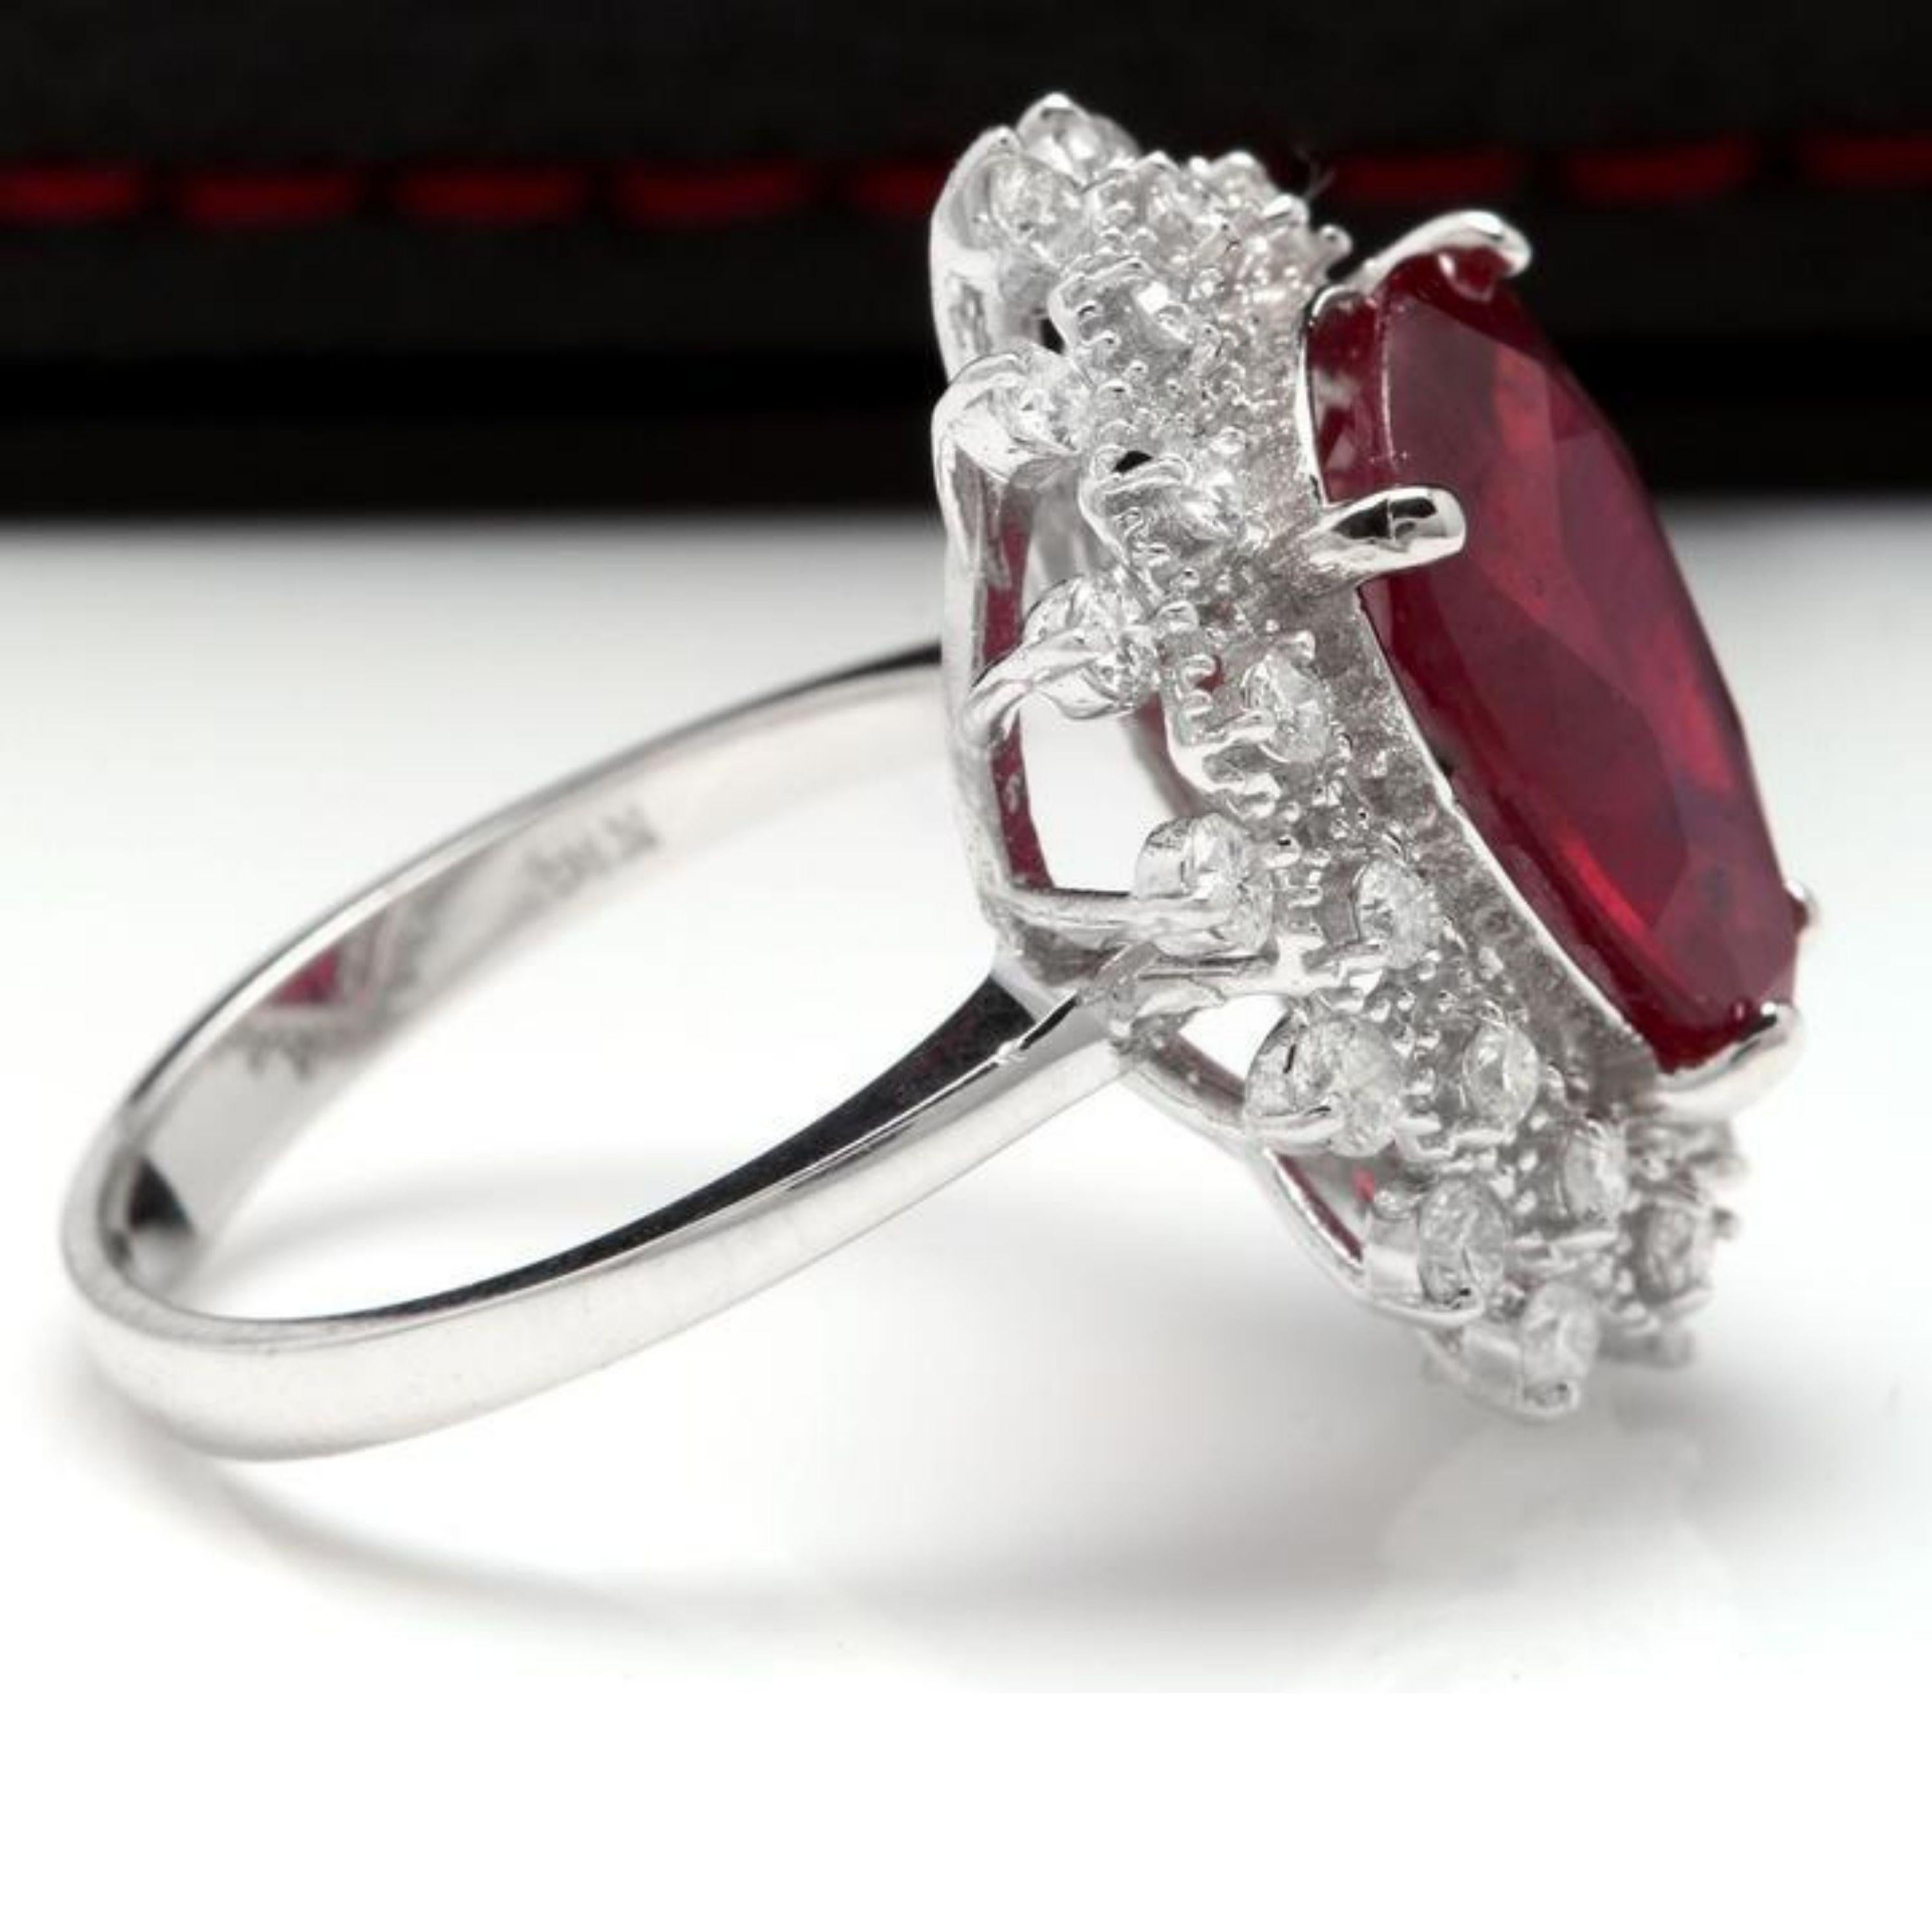 7.90 Karat Beeindruckender natürlicher roter Rubin und Diamant 14K Weißgold Ring

Total Natural Red Ruby Gewicht ist: Ca. 7.00 Karat (Bleiglas gefüllt)

Rubin Maße: Ca. 14,20 x 10,70 mm

Natürliche runde Diamanten Gewicht: Ca. 0,90 Karat (Farbe G-H